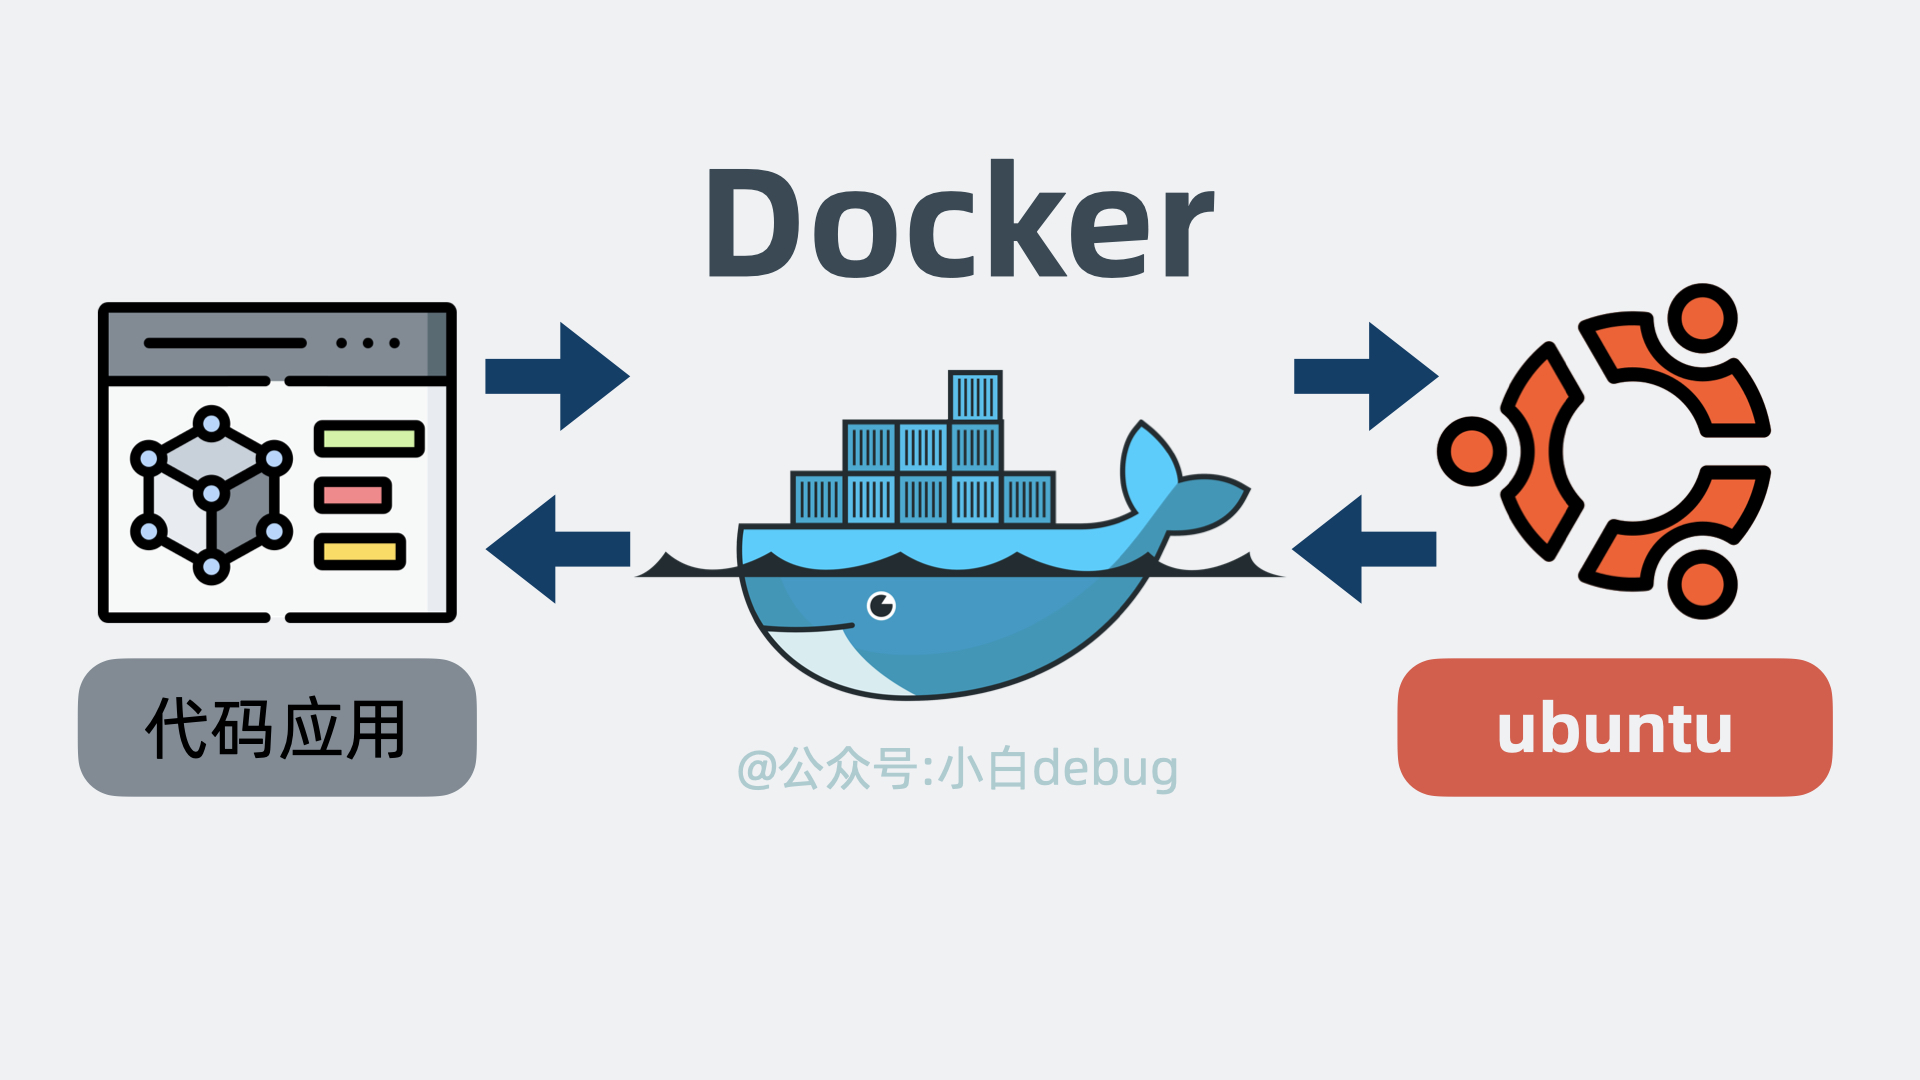 Docker是代码和操作系统之间的中间层